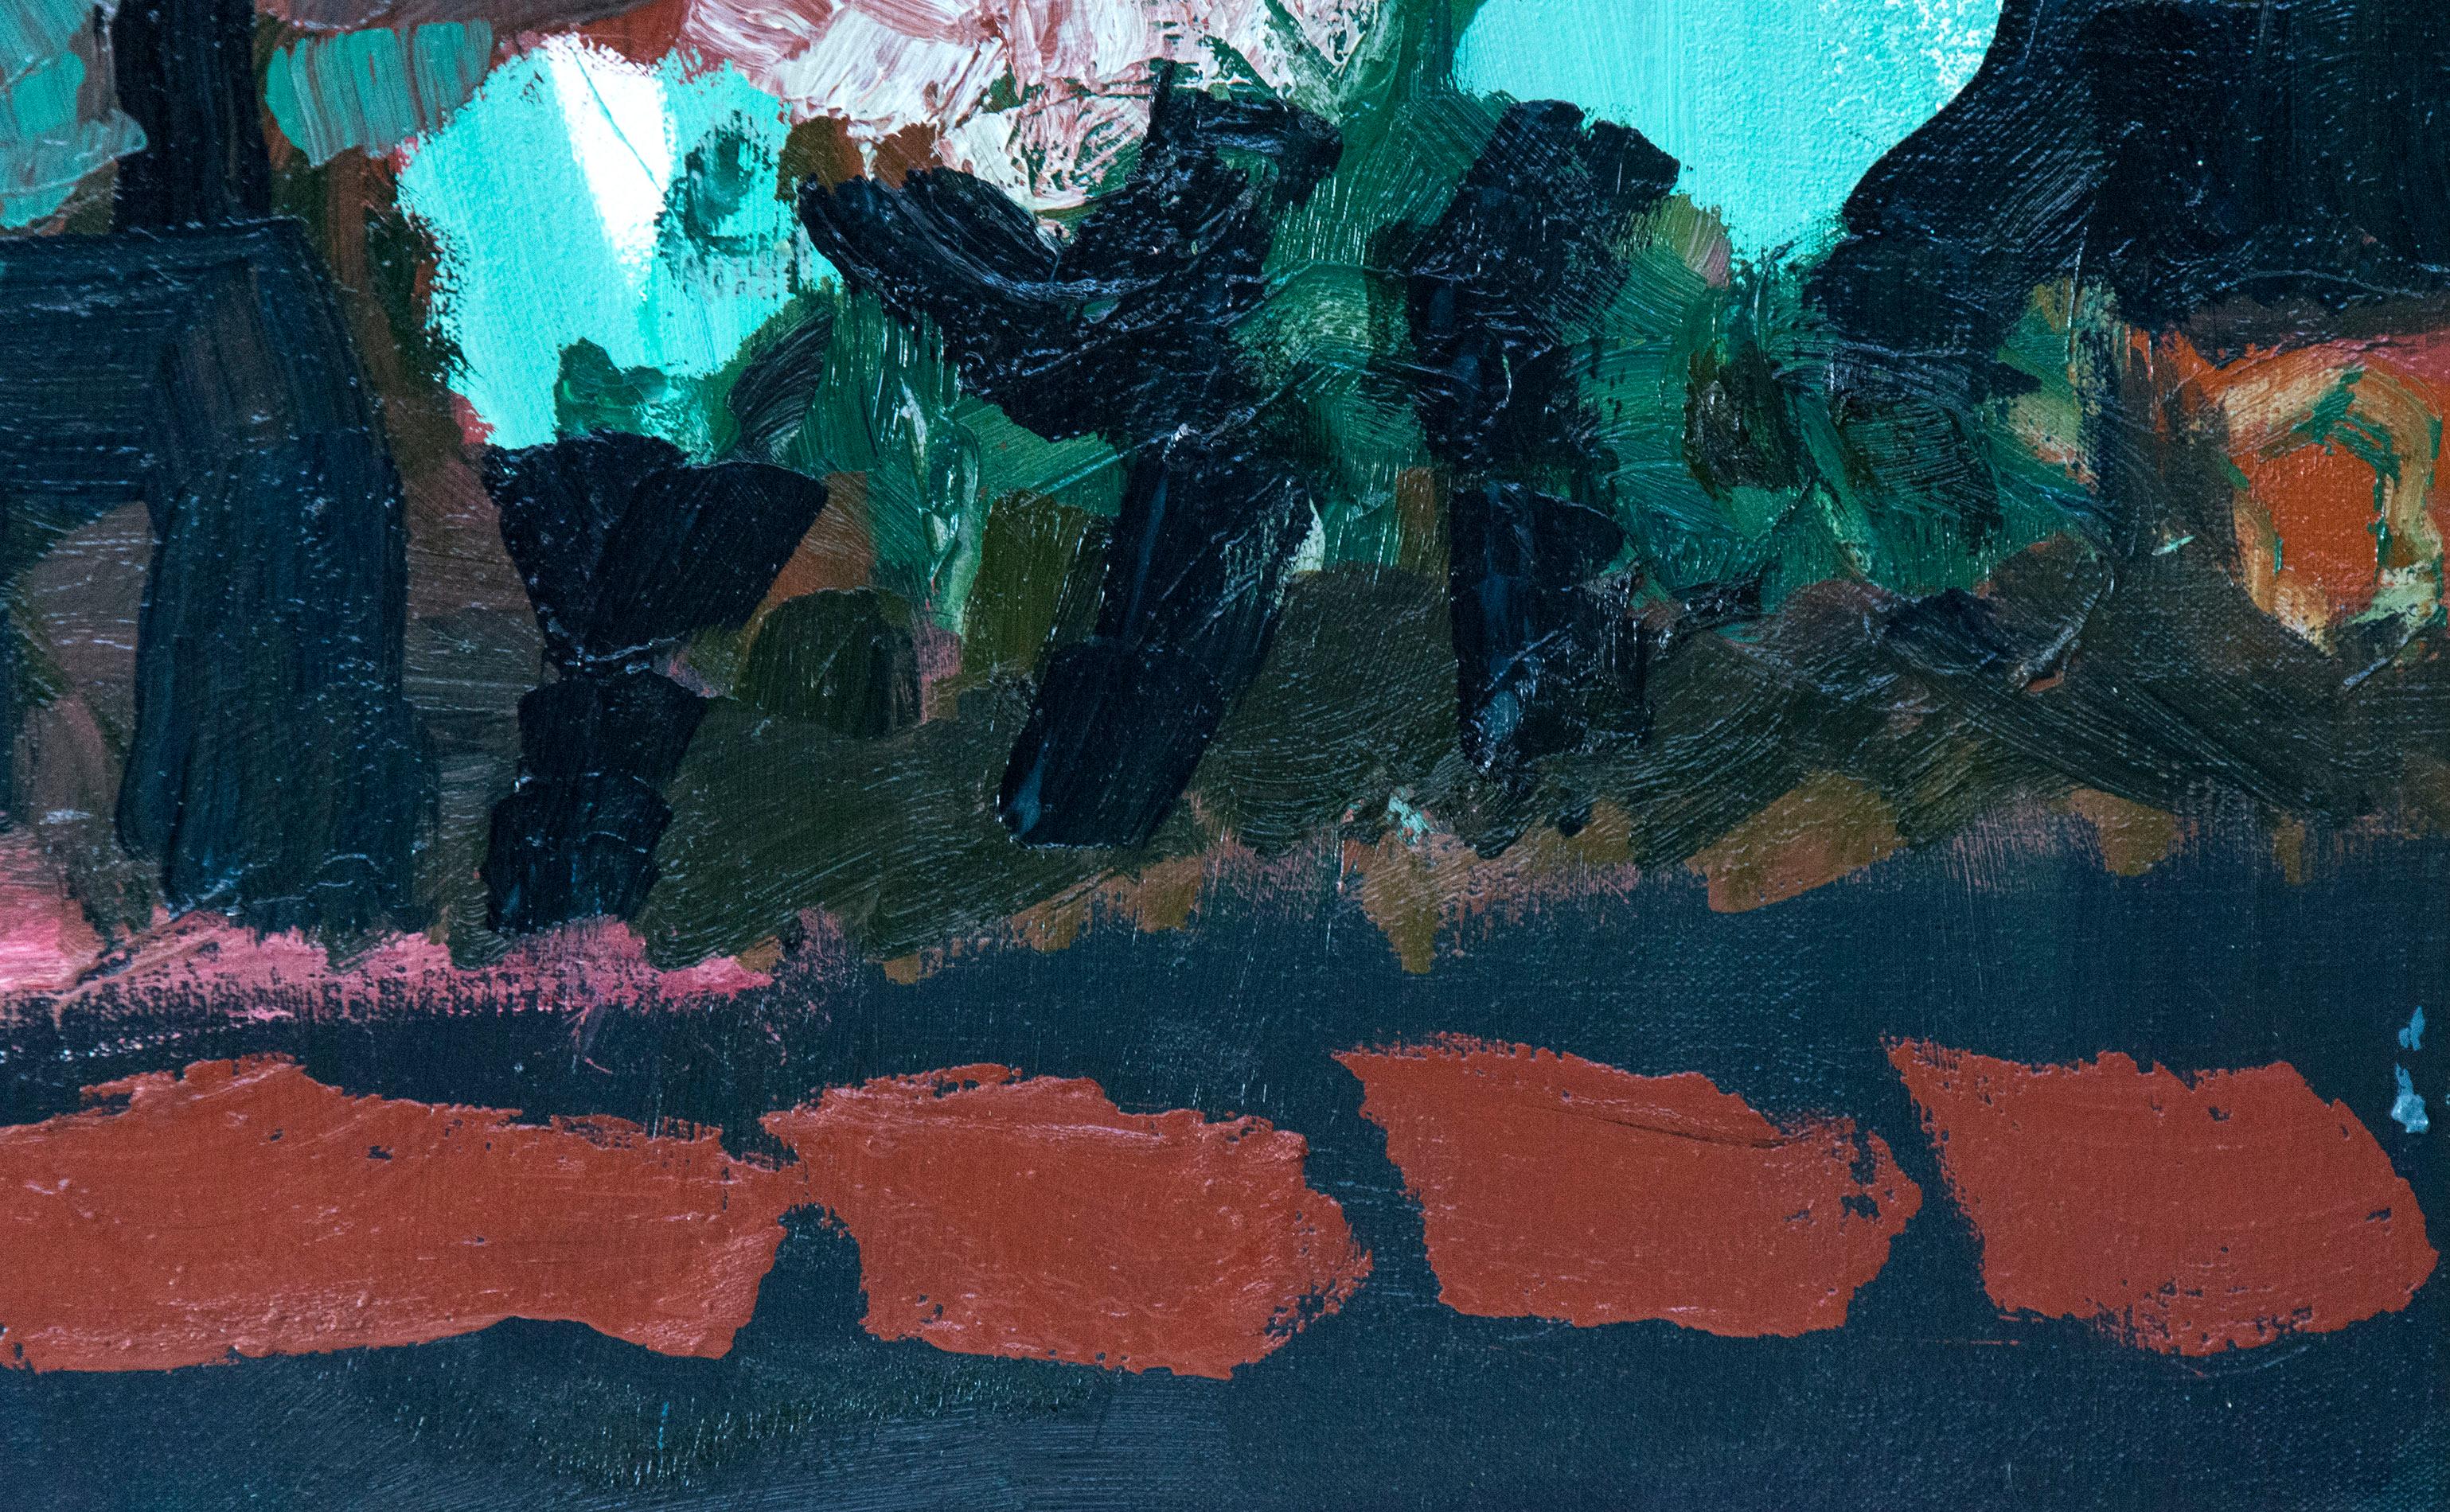 Les formes superposées d'une route pavée, d'arbres turquoise et du ciel frôlent l'abstraction dans ce paysage ludique de Jennifer Hornyak. Les dimensions encadrées sont de 19 x 19 pouces.

Inspirée par l'expressionnisme allemand et les maîtres